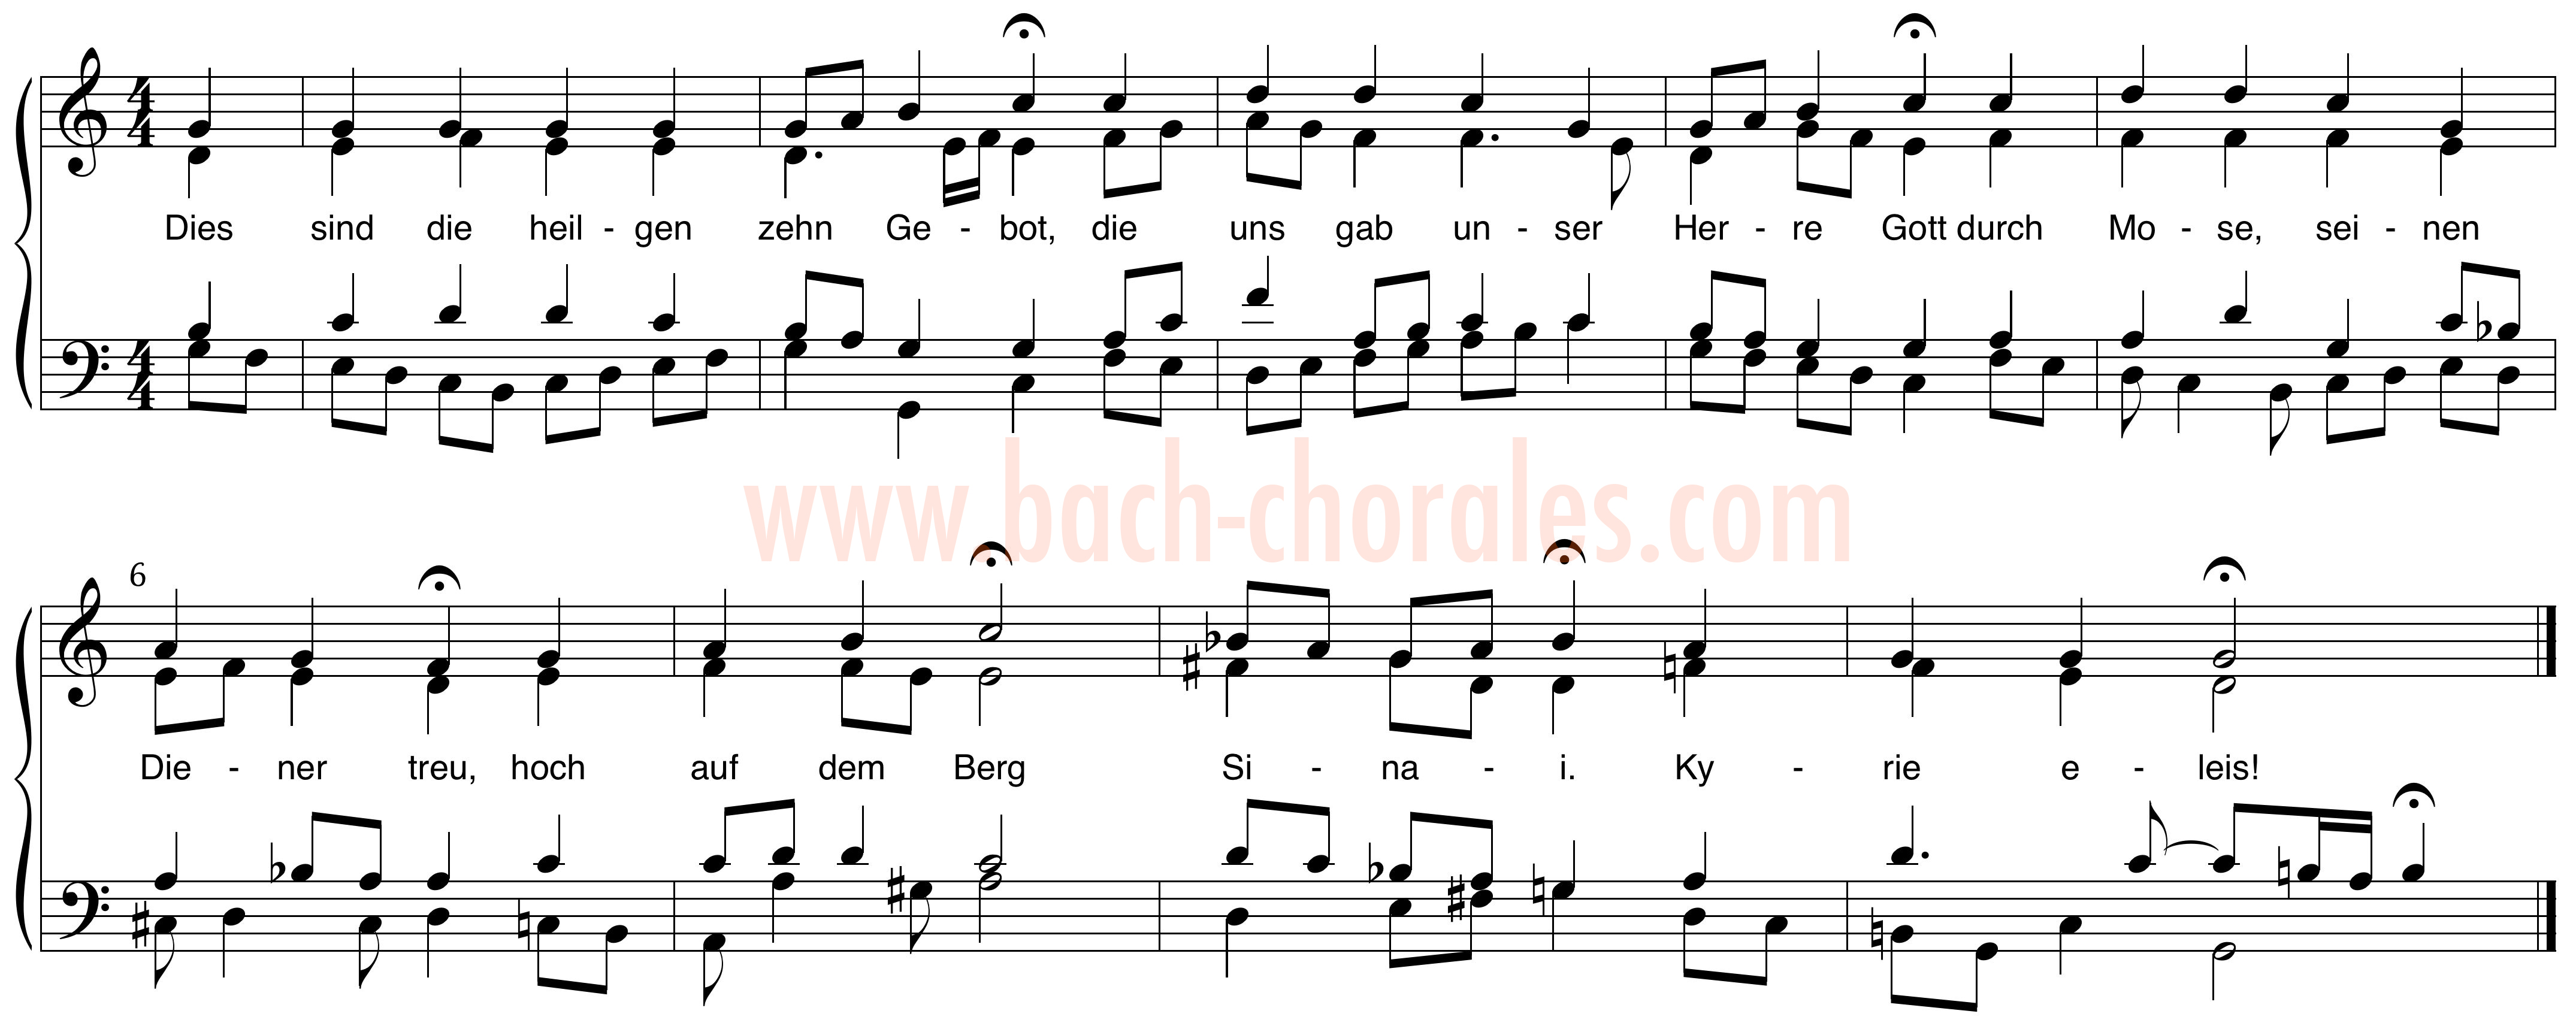 notenbeeld BWV 298 op https://www.bach-chorales.com/